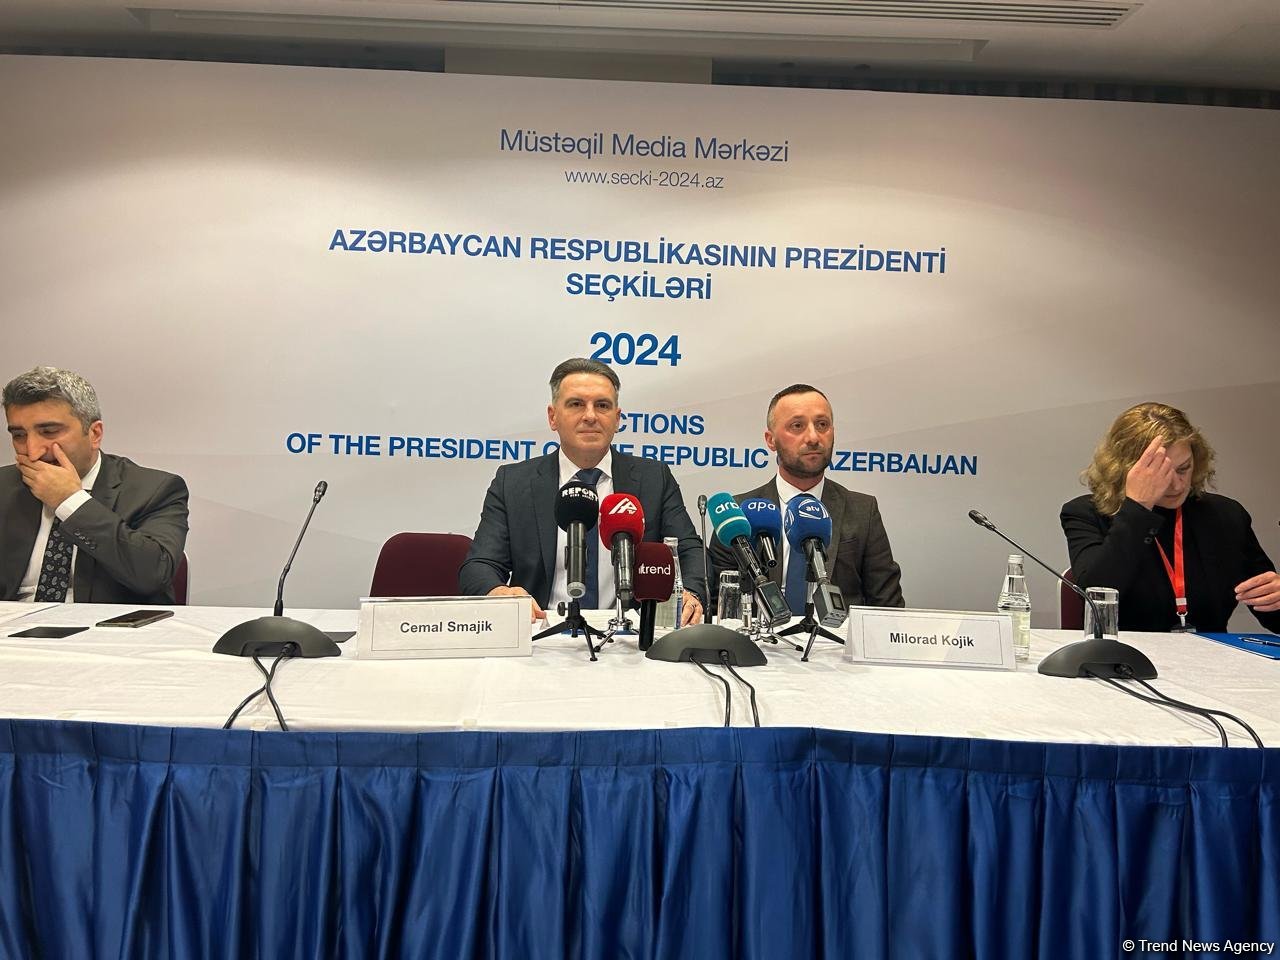 Президентские выборы в Азербайджане прошли по всем правилам - депутат из Боснии и Герцеговины